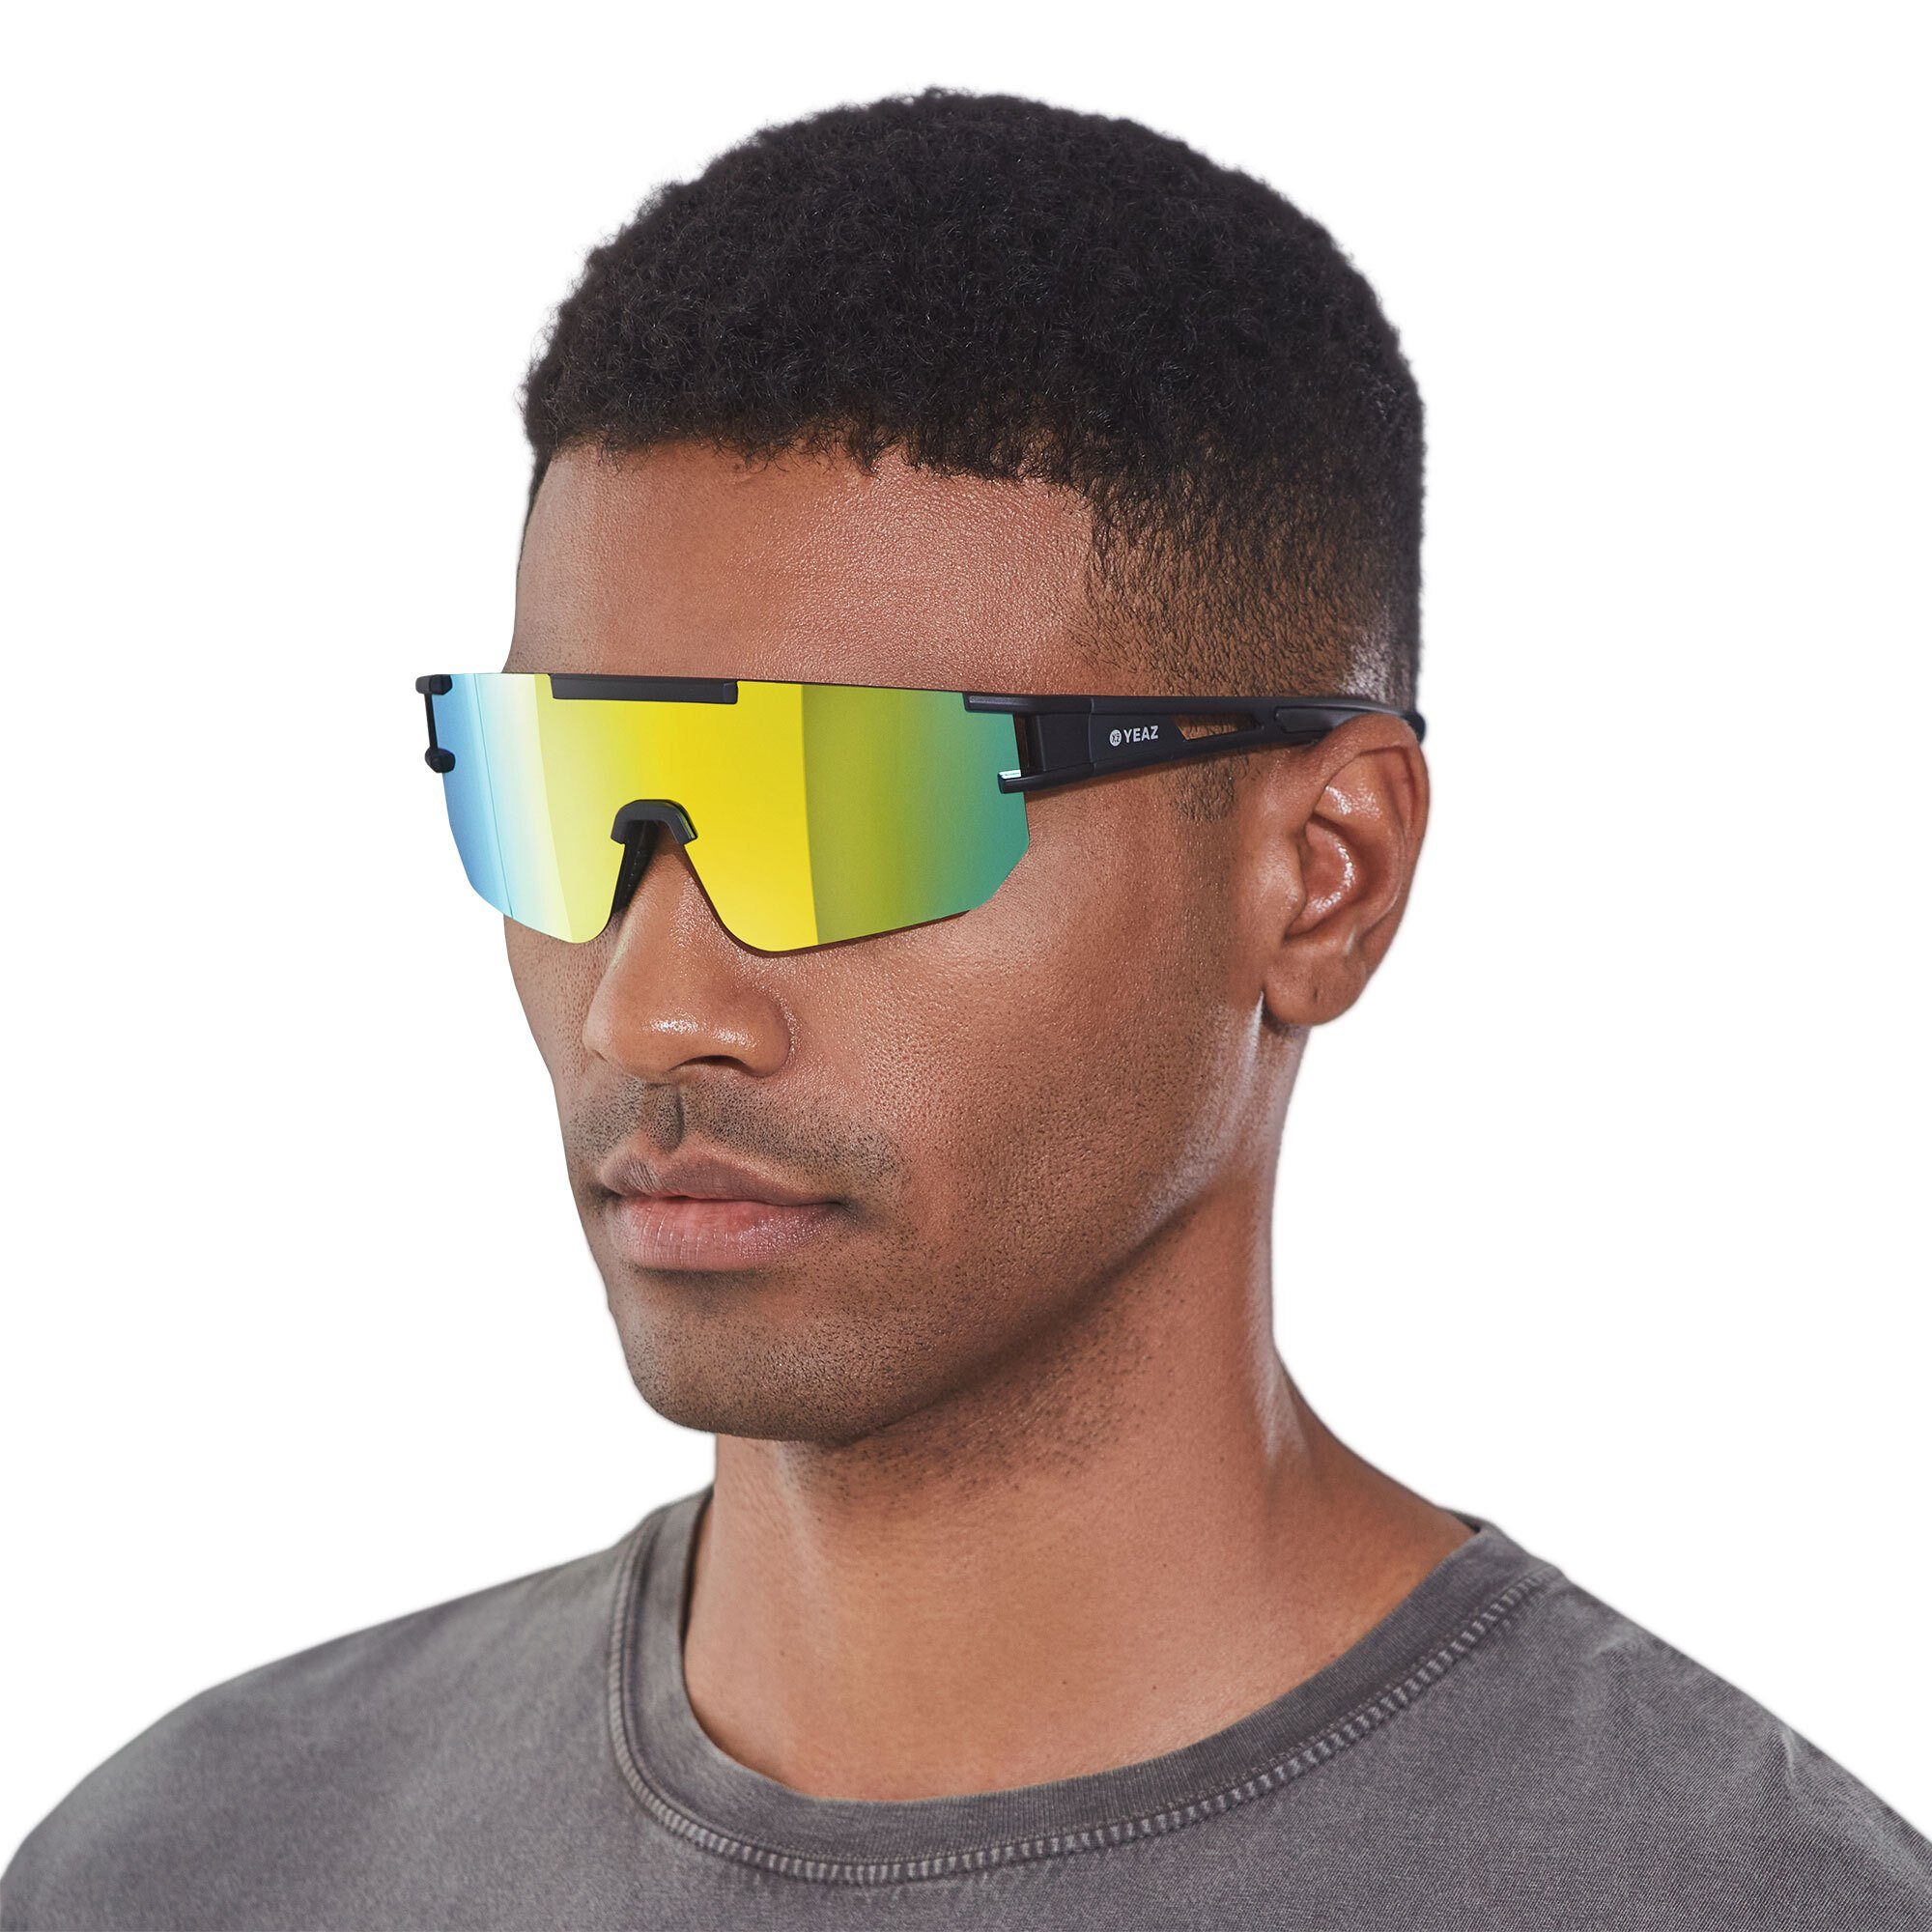 YEAZ Sportbrille SUNSPARK sport-sonnenbrille black/golden green, Guter Schutz bei optimierter Sicht | Brillen